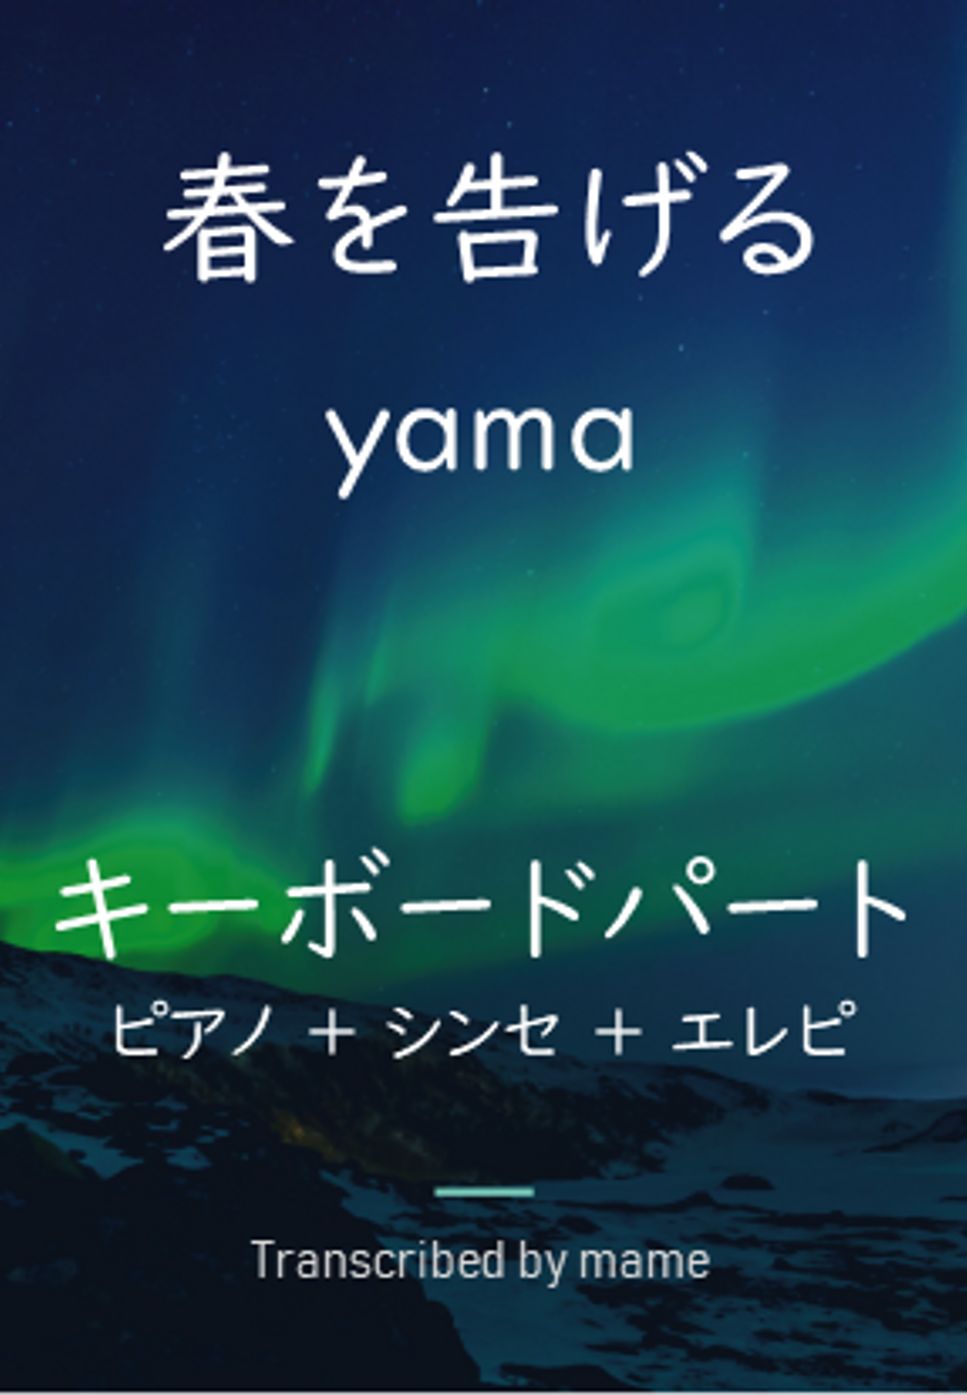 yama - 春を告げる（キーボードパート） (ピアノ、シンセ、エレピパート) by mame